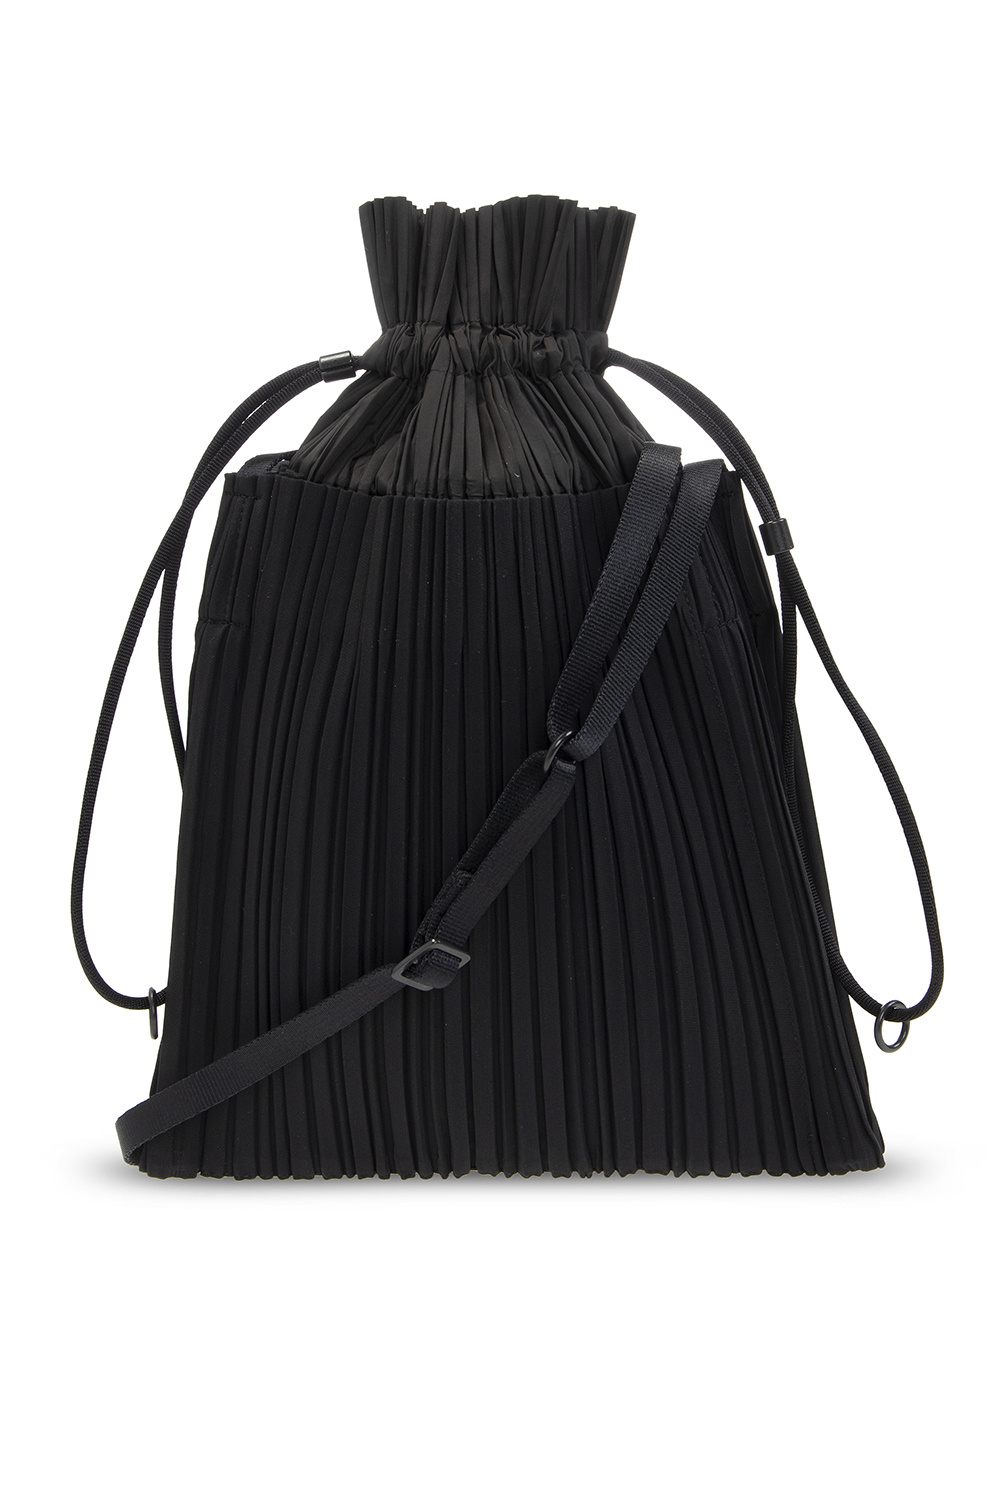 Pleats Please Issey Miyake Pleated Tote Bag in Black